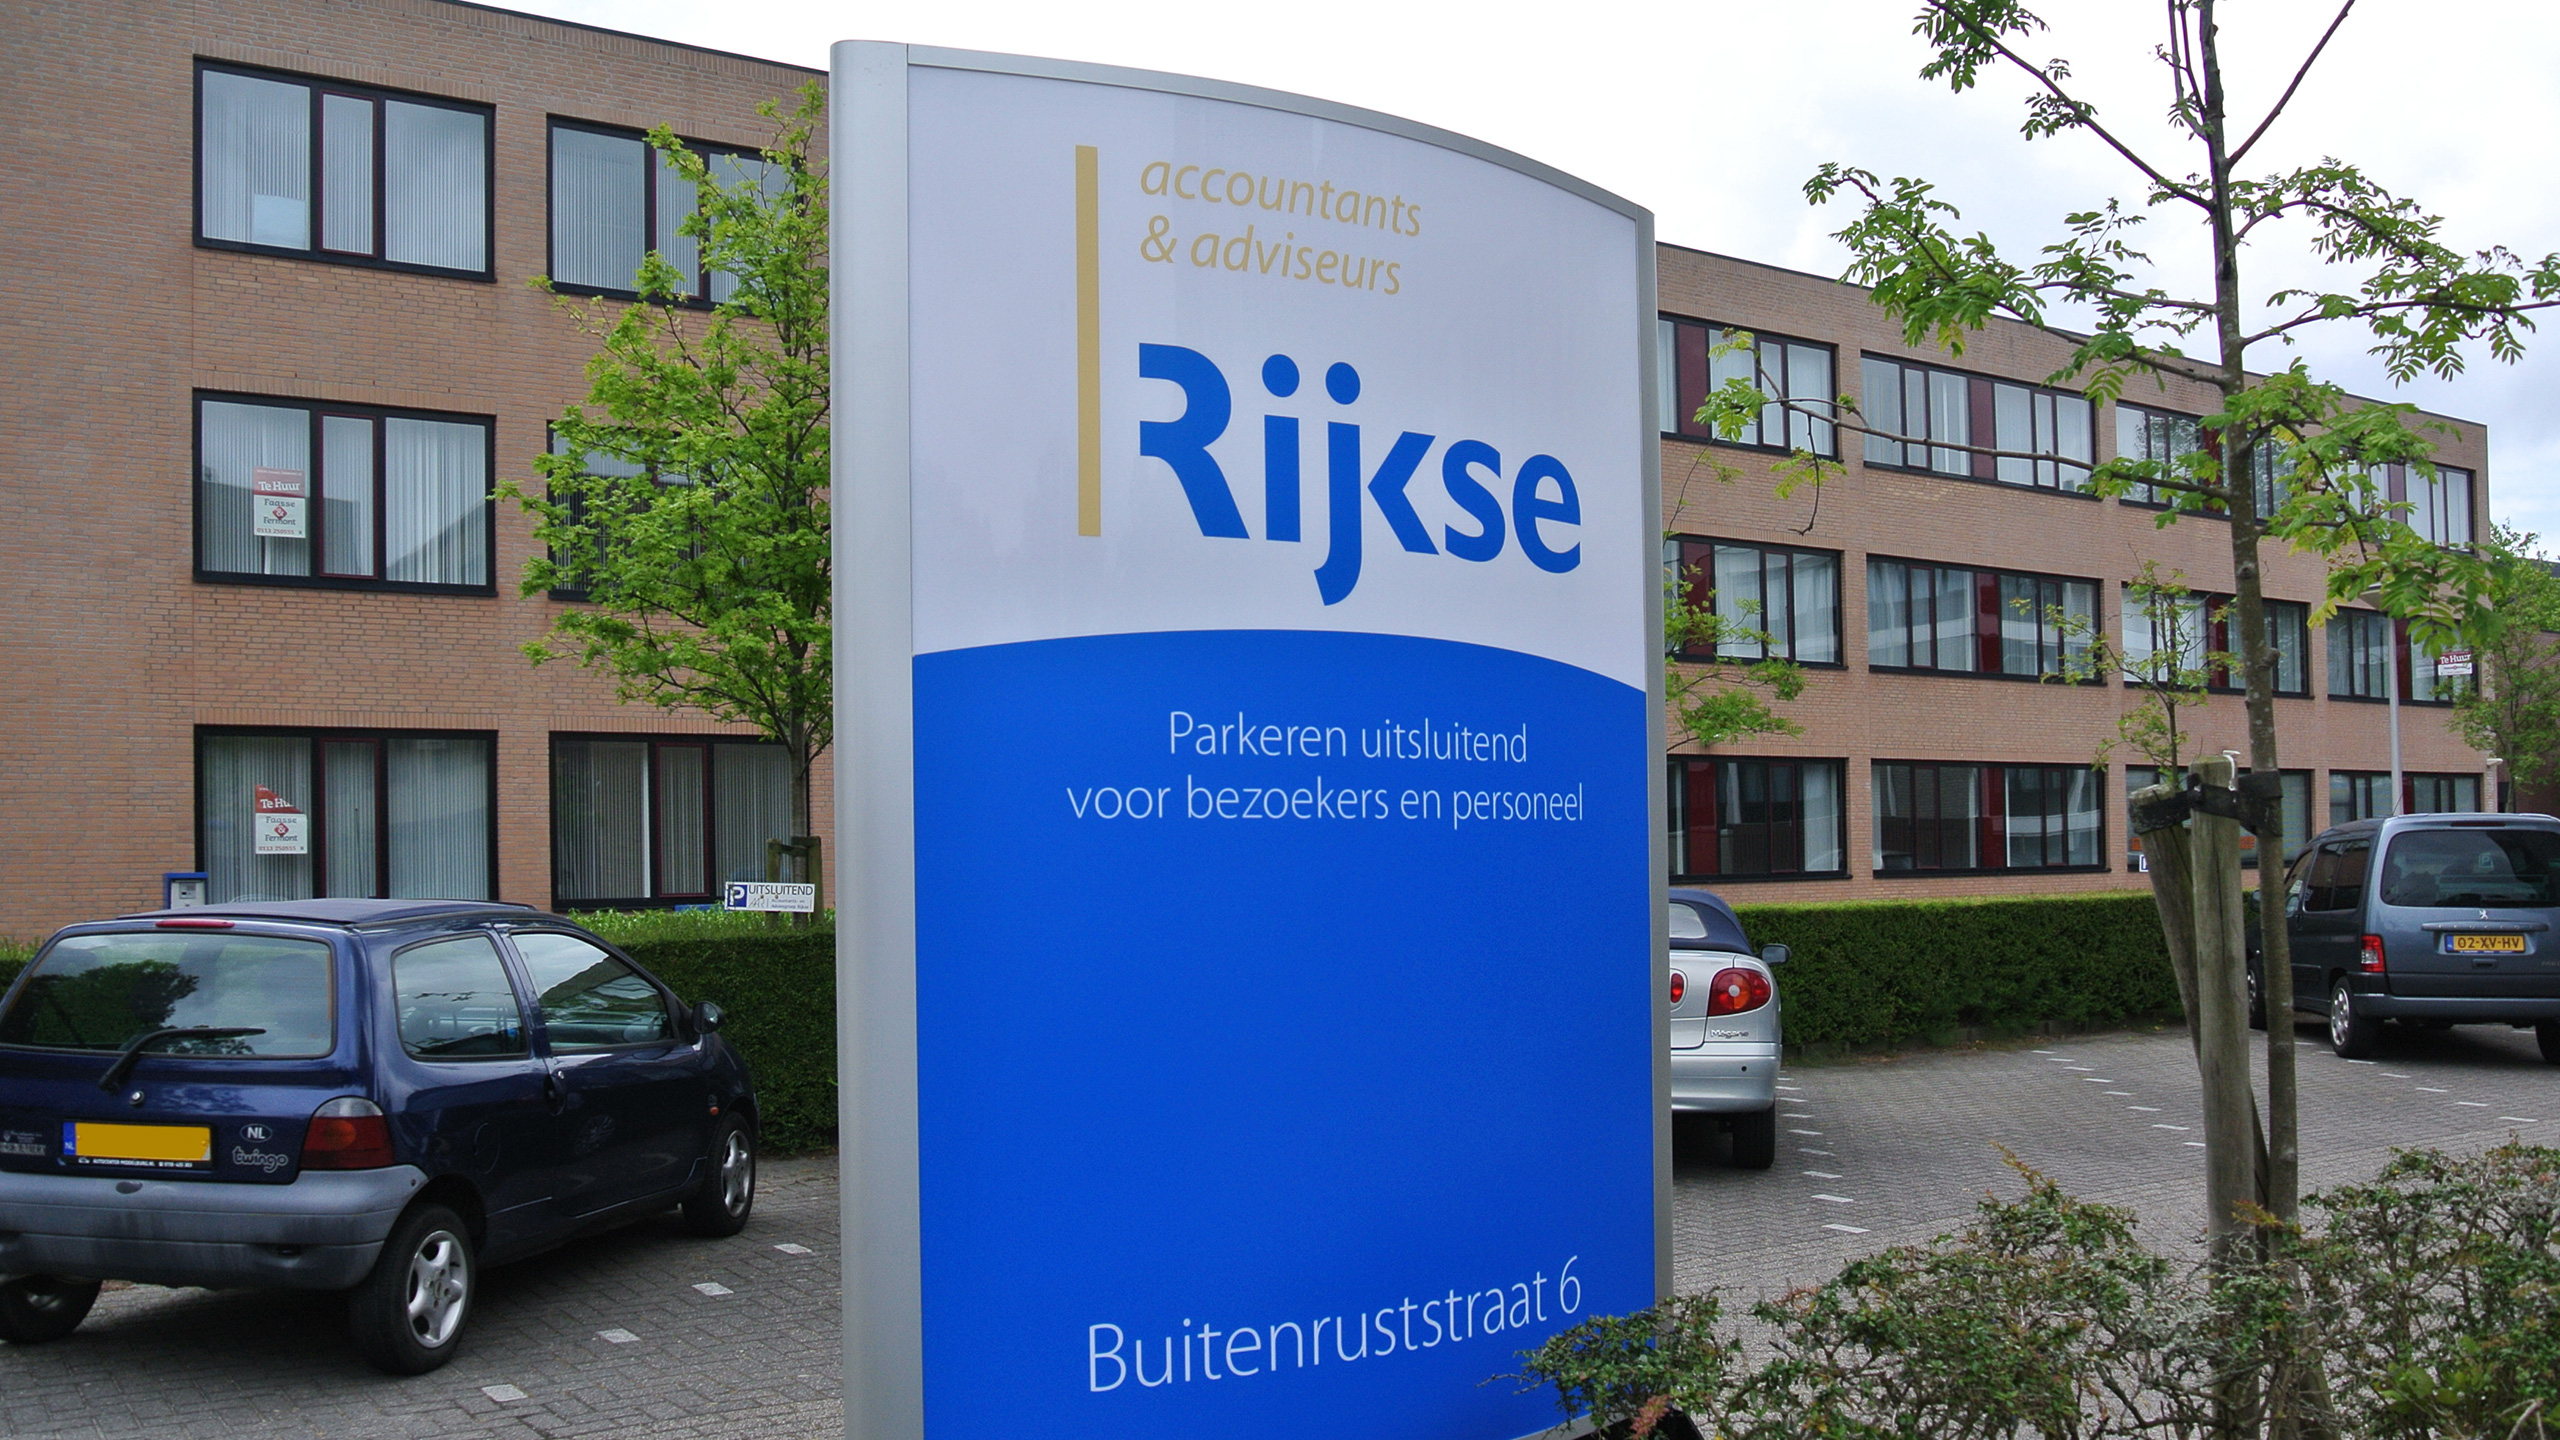 Reclame zuil bij accountants & adviseurs Rijkse